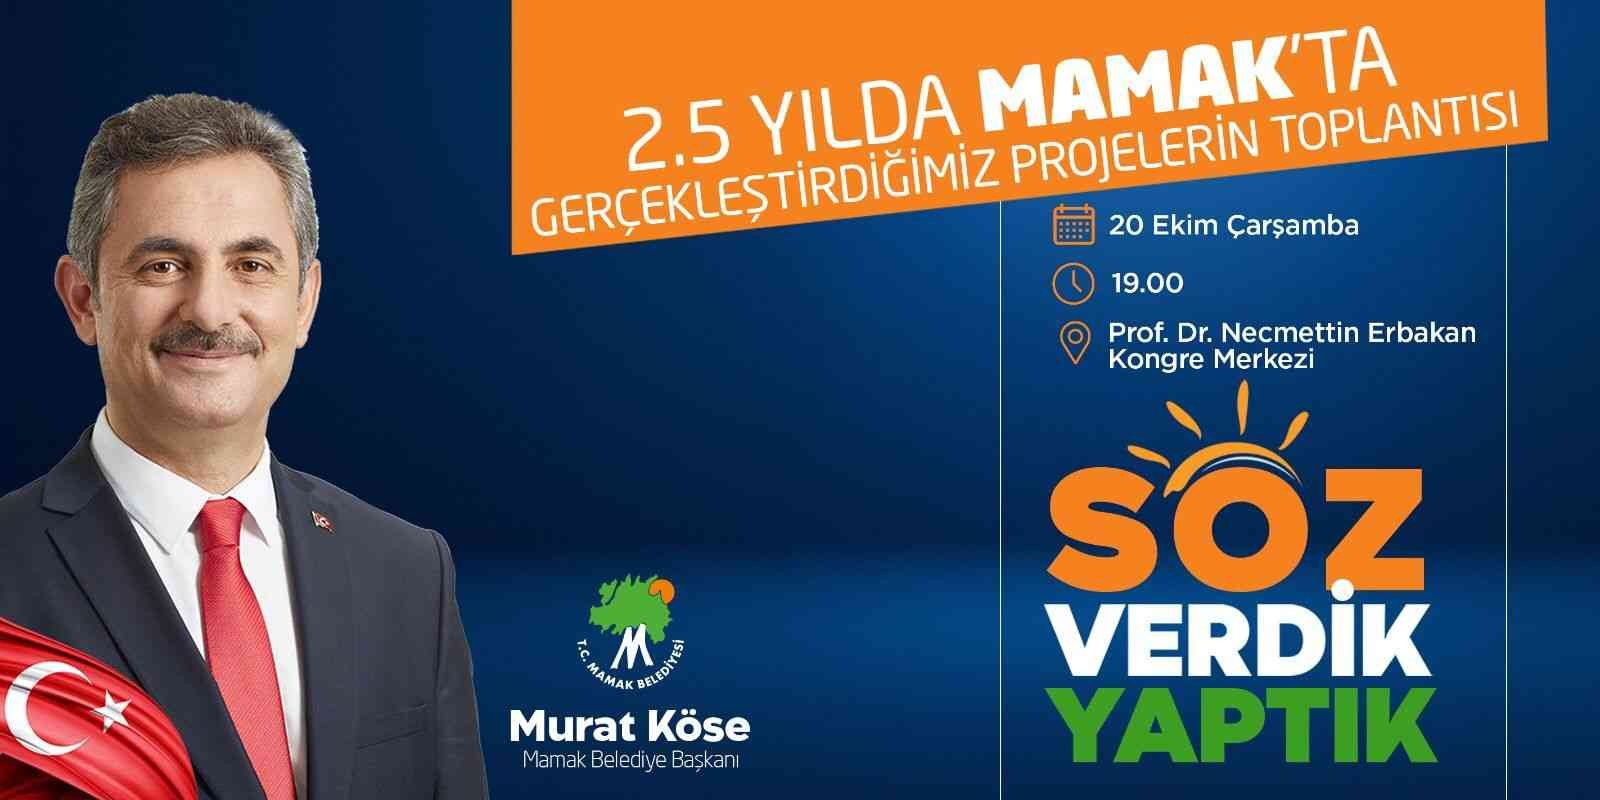 Mamak Belediye Başkanı Köse: “Söz verdik, yaptık”